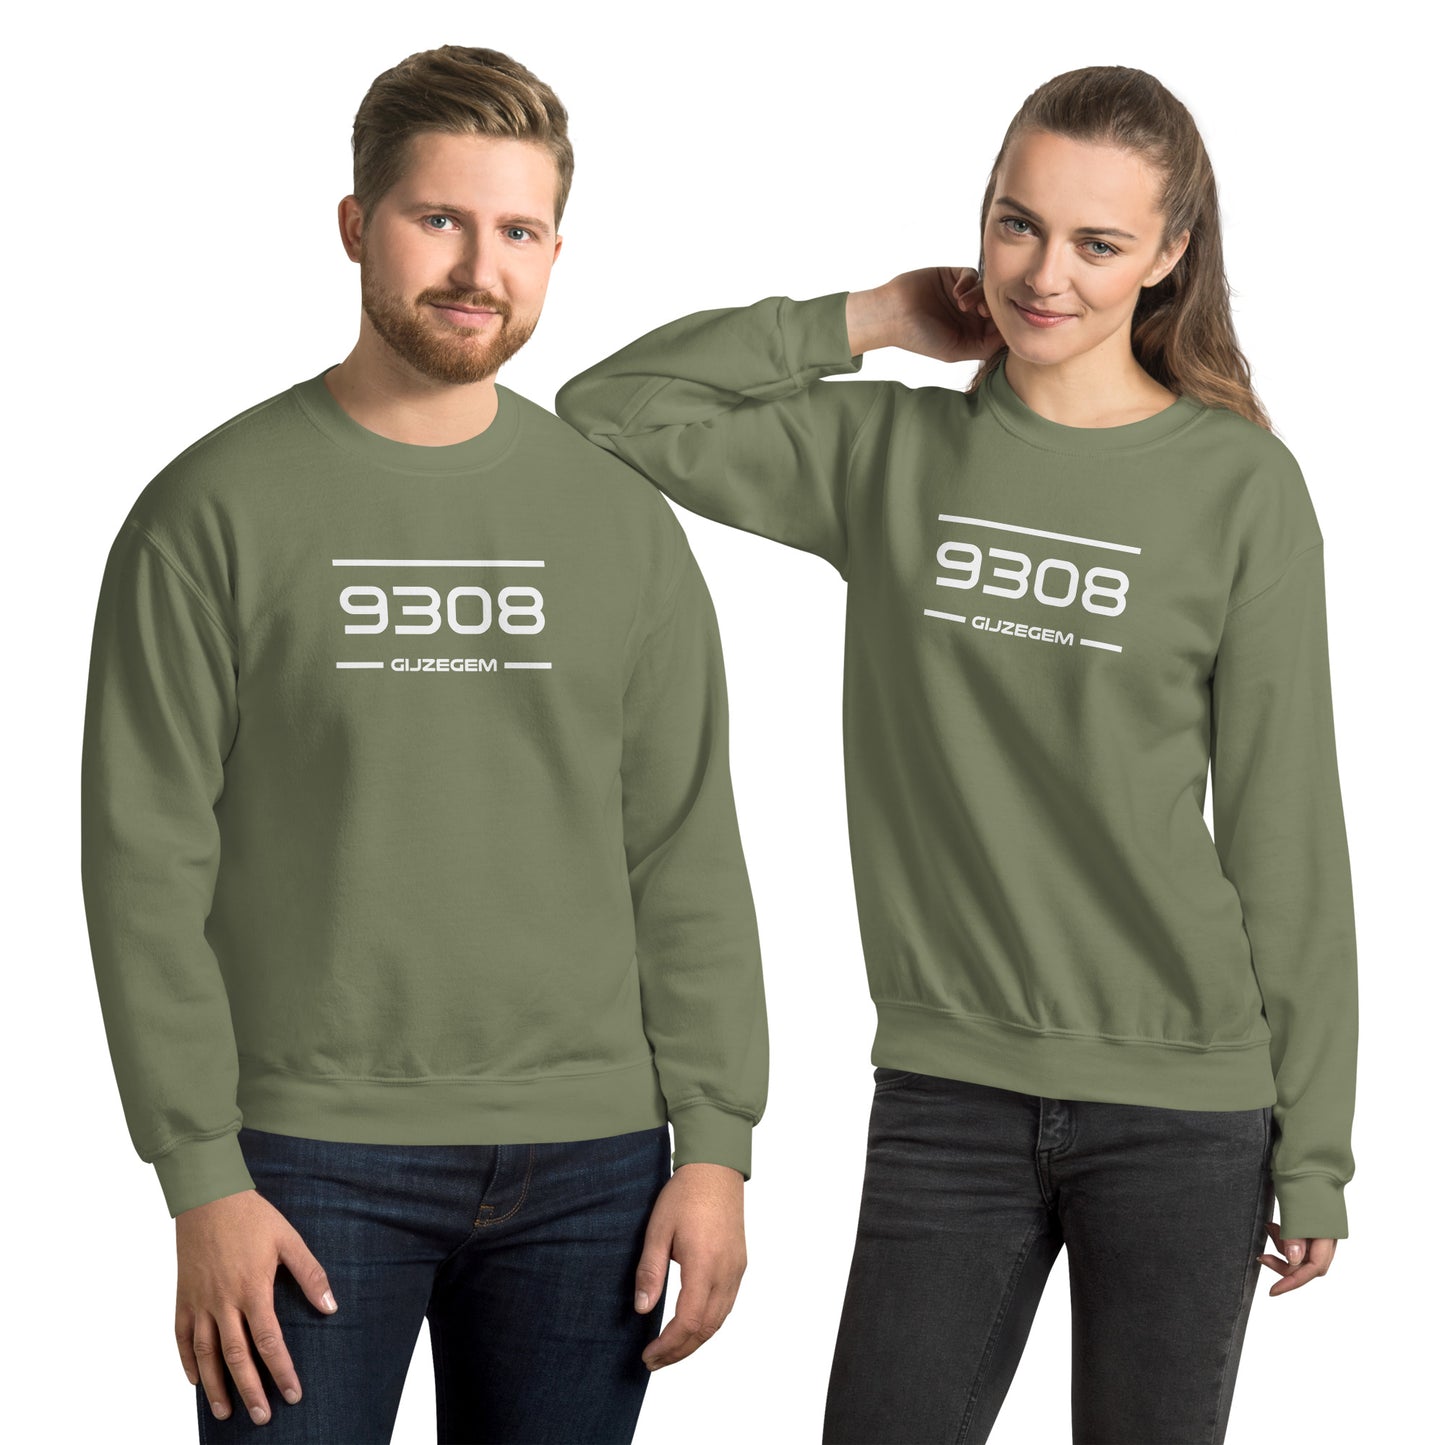 Sweater - 9308- Gijzegem (M/V)